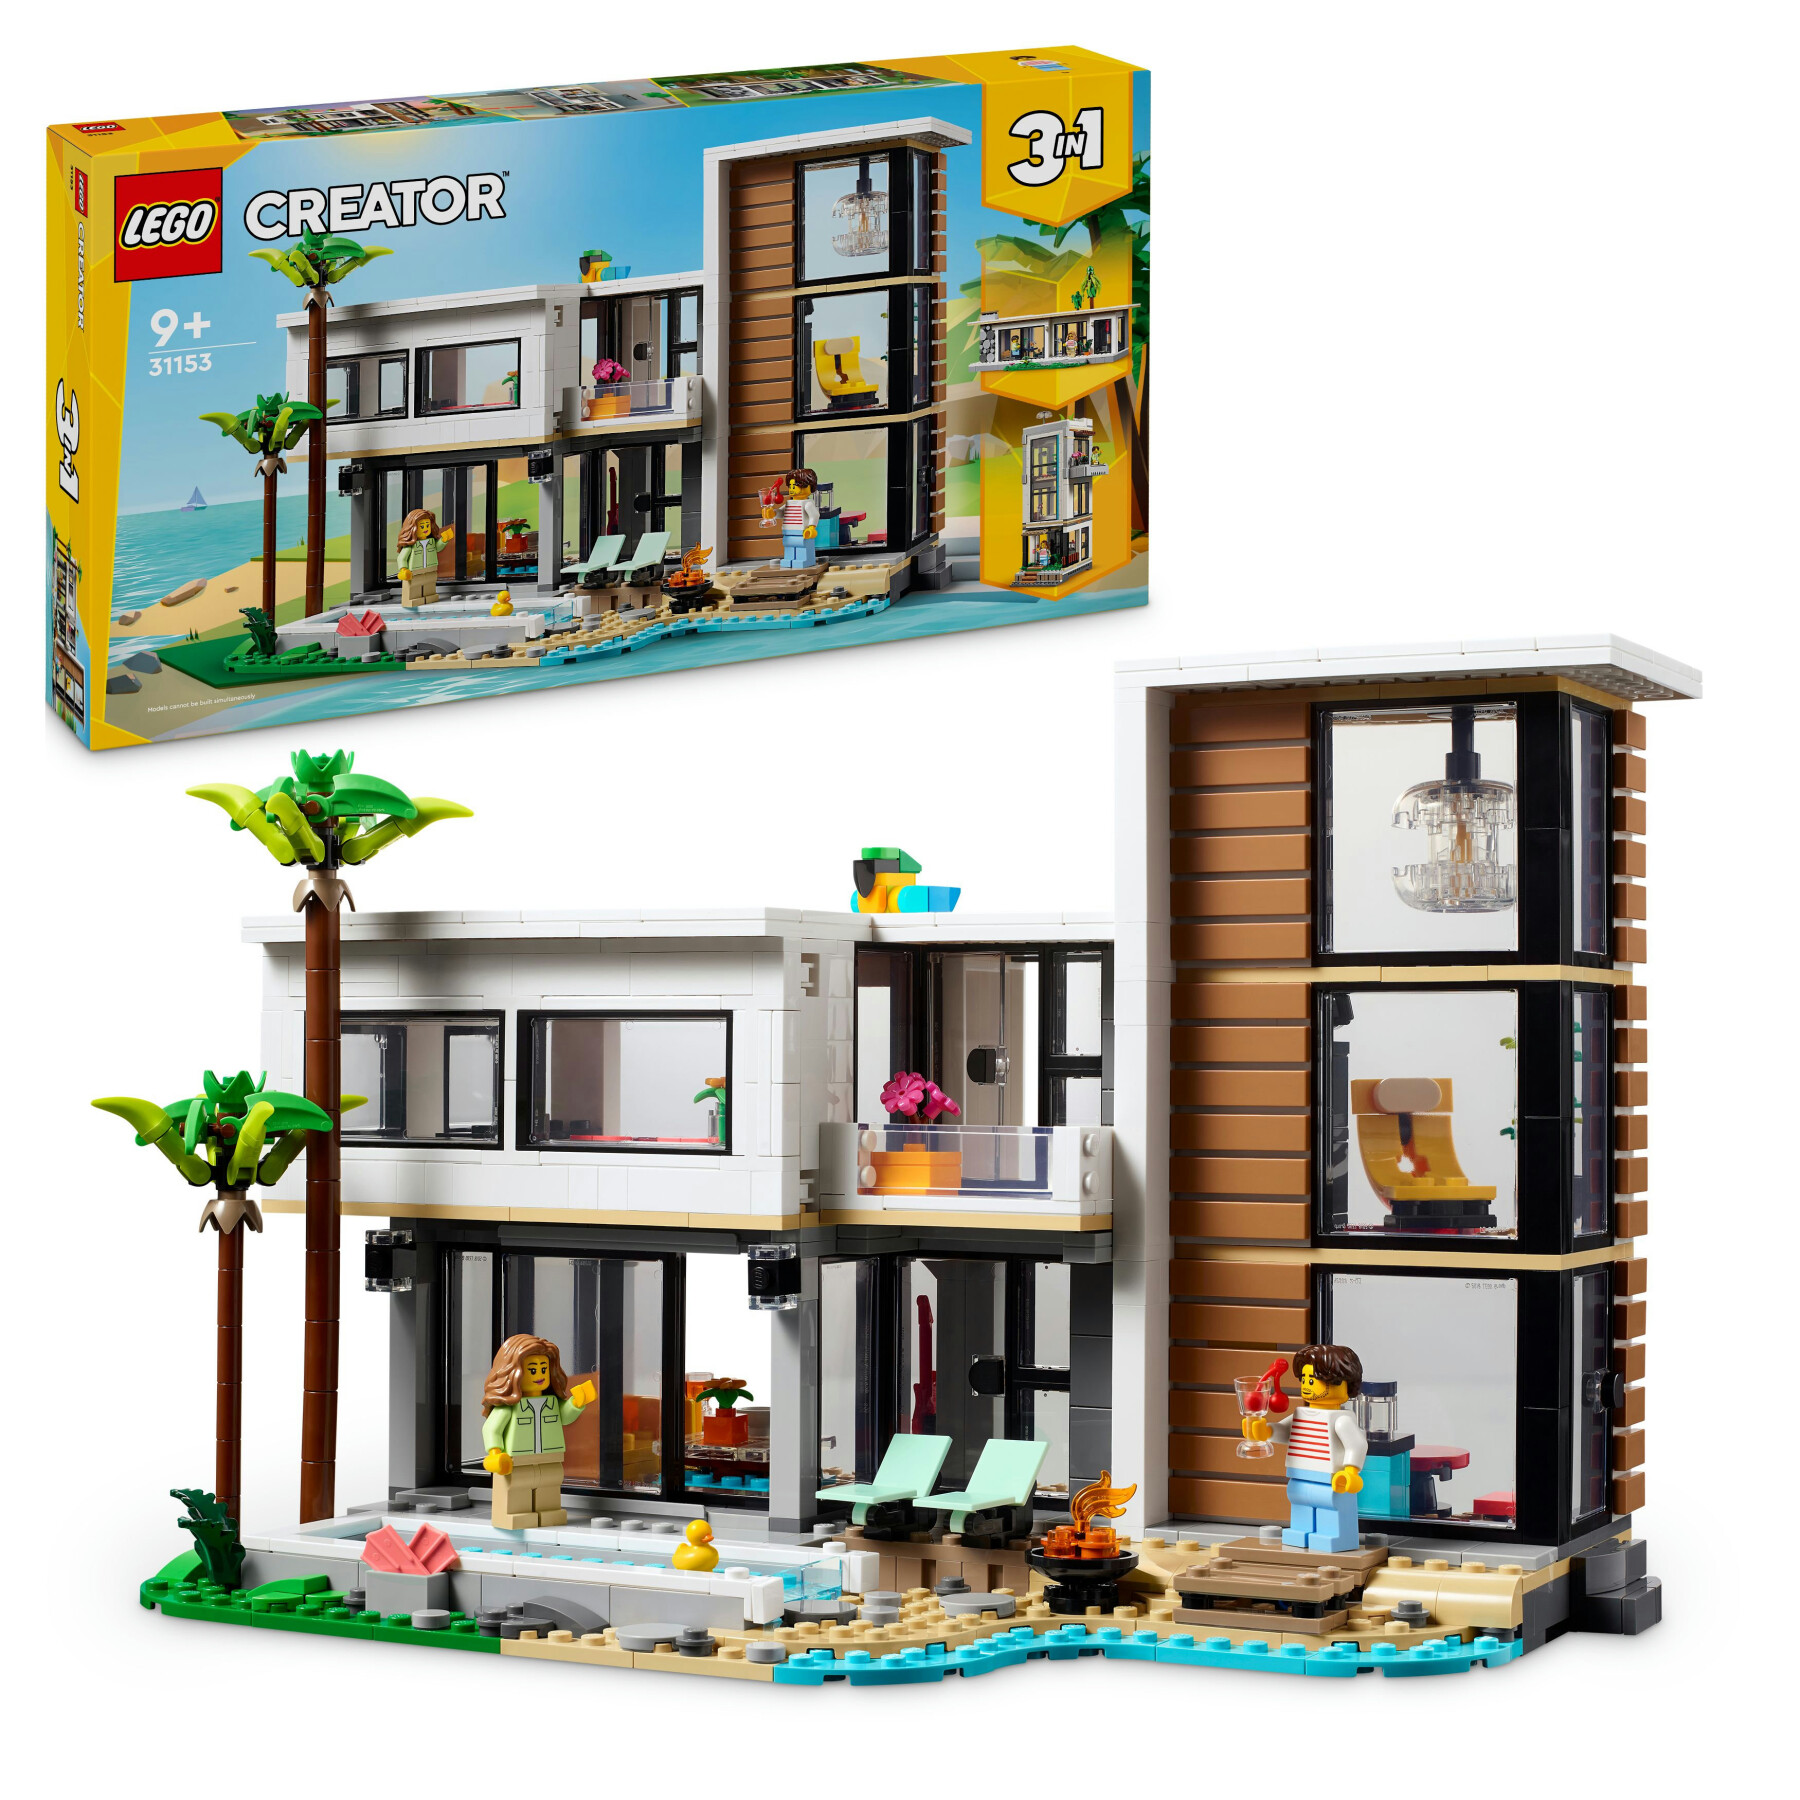 Lego creator 3 in 1 31153 casa moderna, 3 modellini di abitazioni da costruire, giochi per bambini 9+, idea regalo compleanno - LEGO CREATOR